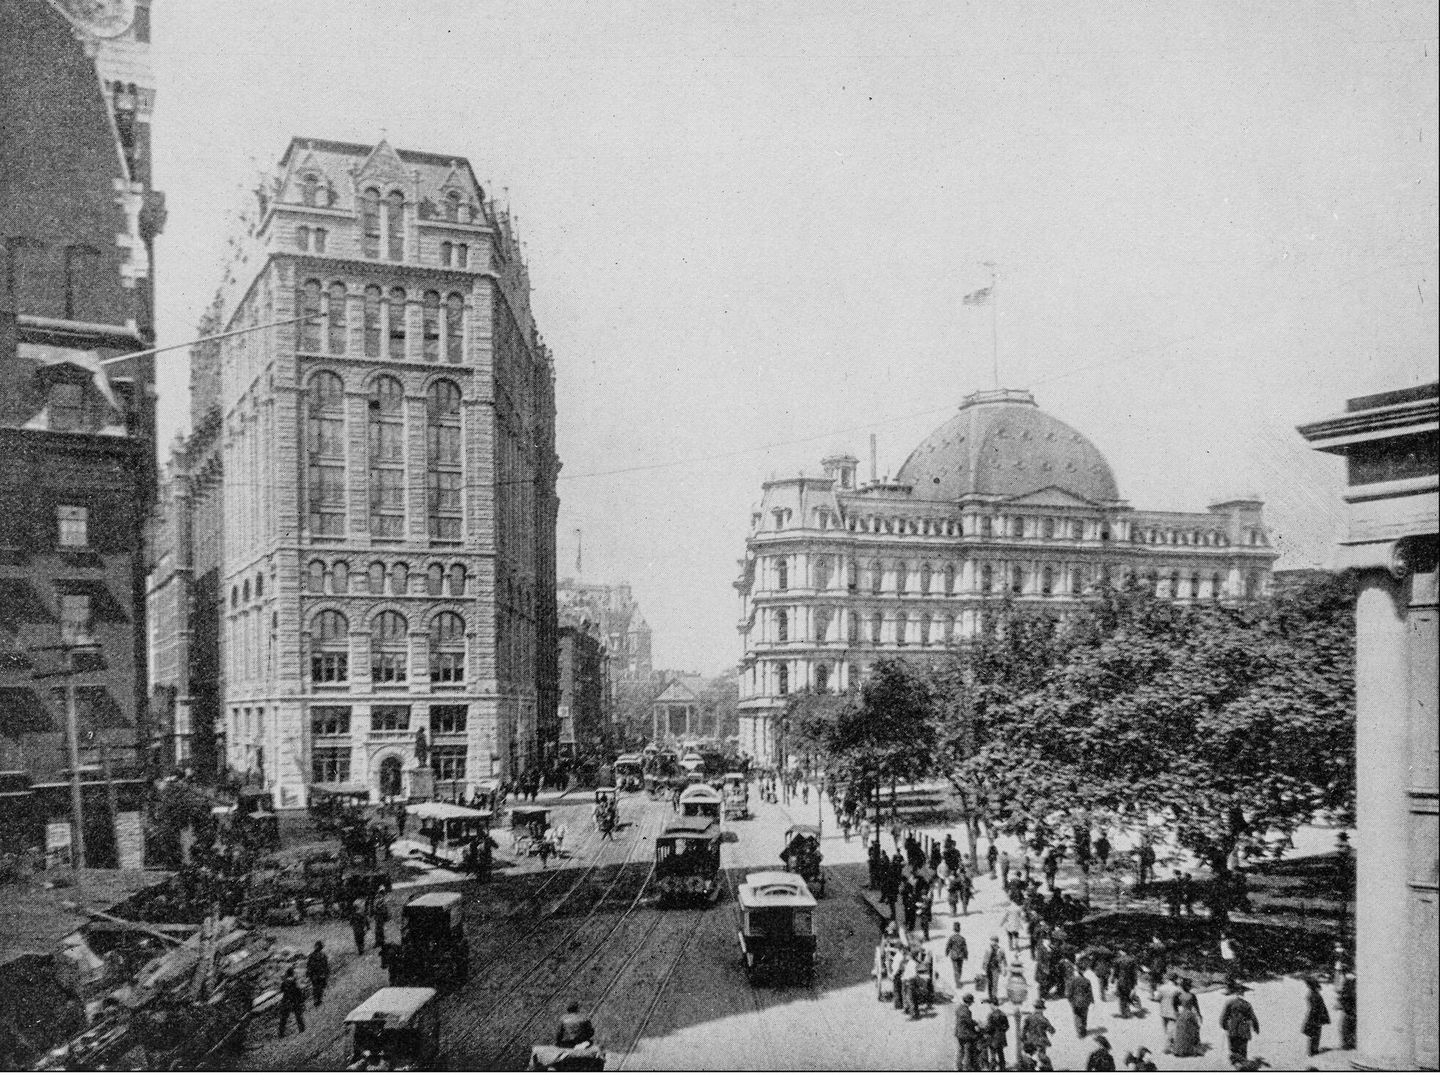 Nueva York, en una foto antigua a comienzos del siglo XX, cuando el ruido de los motores empezaba a molestar en las grandes ciudades. (iStock)